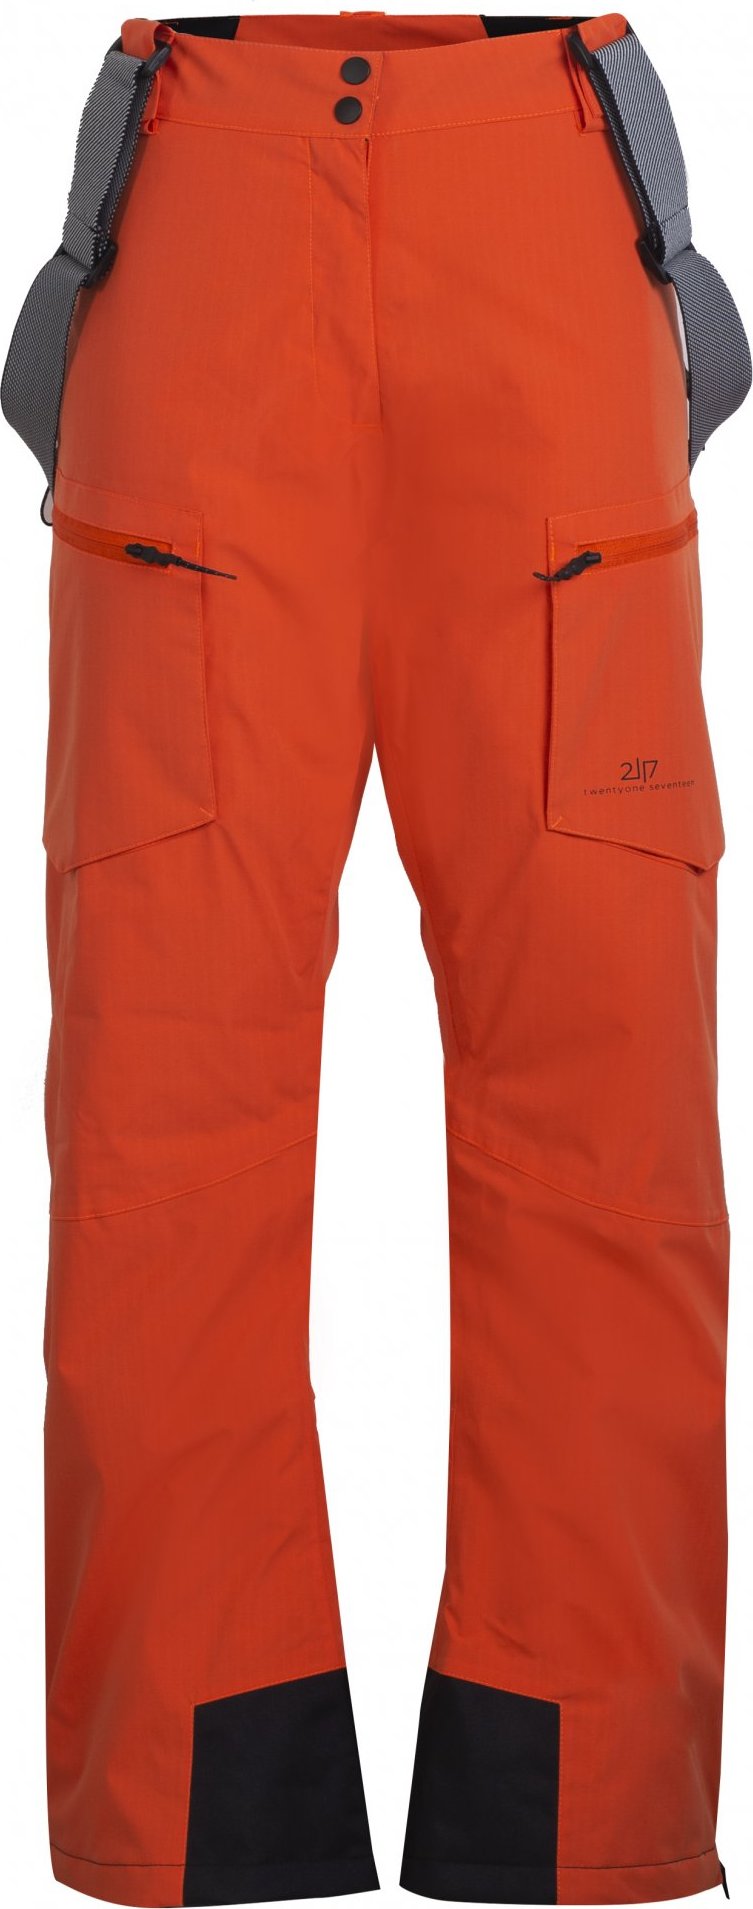 Dámské lyžařské kalhoty 2117 Nyhem Eco oranžová Velikost: L